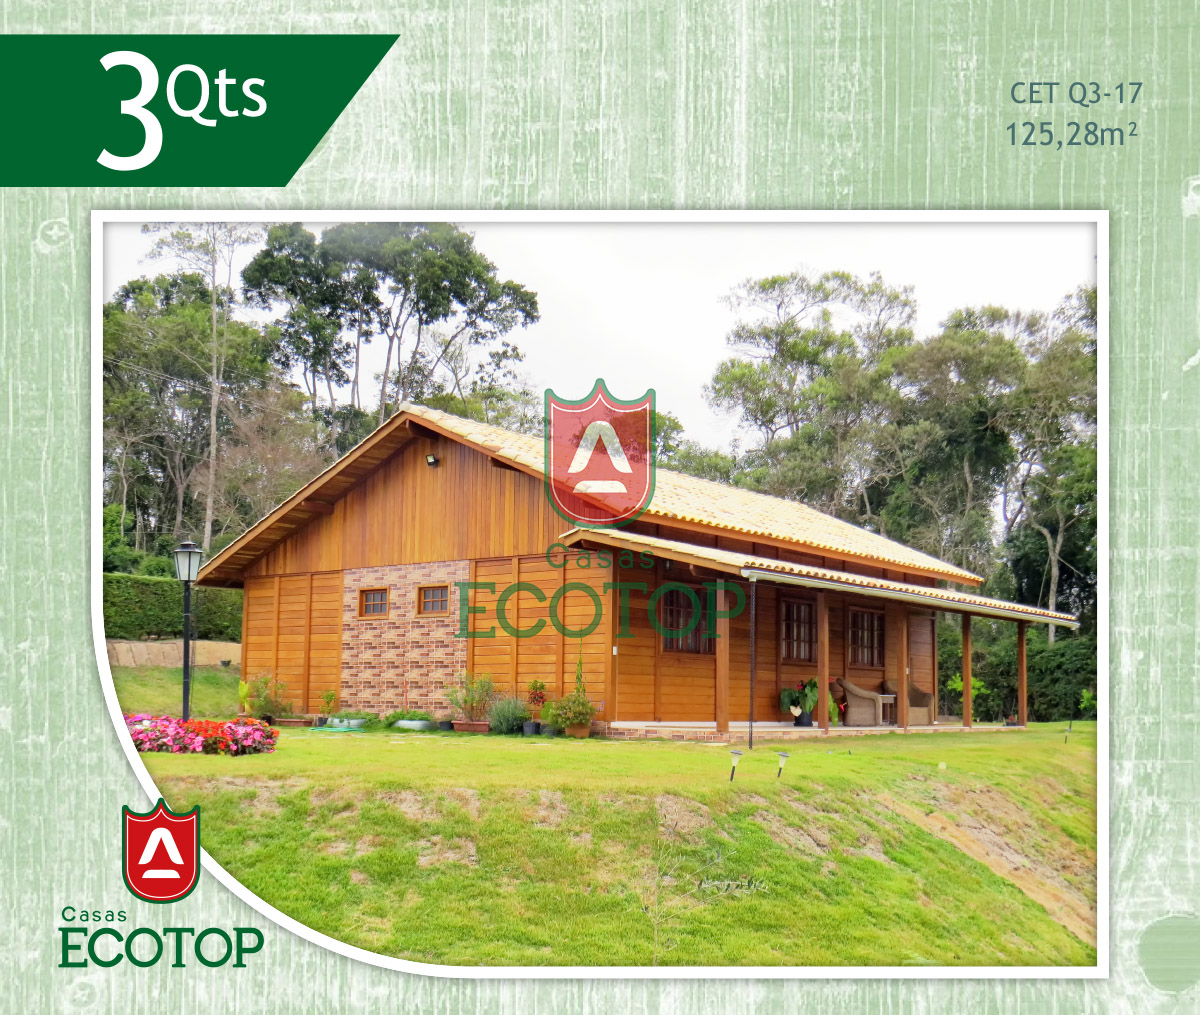 cet-17-fachada-casas-de-madeira-ecotop.cdr